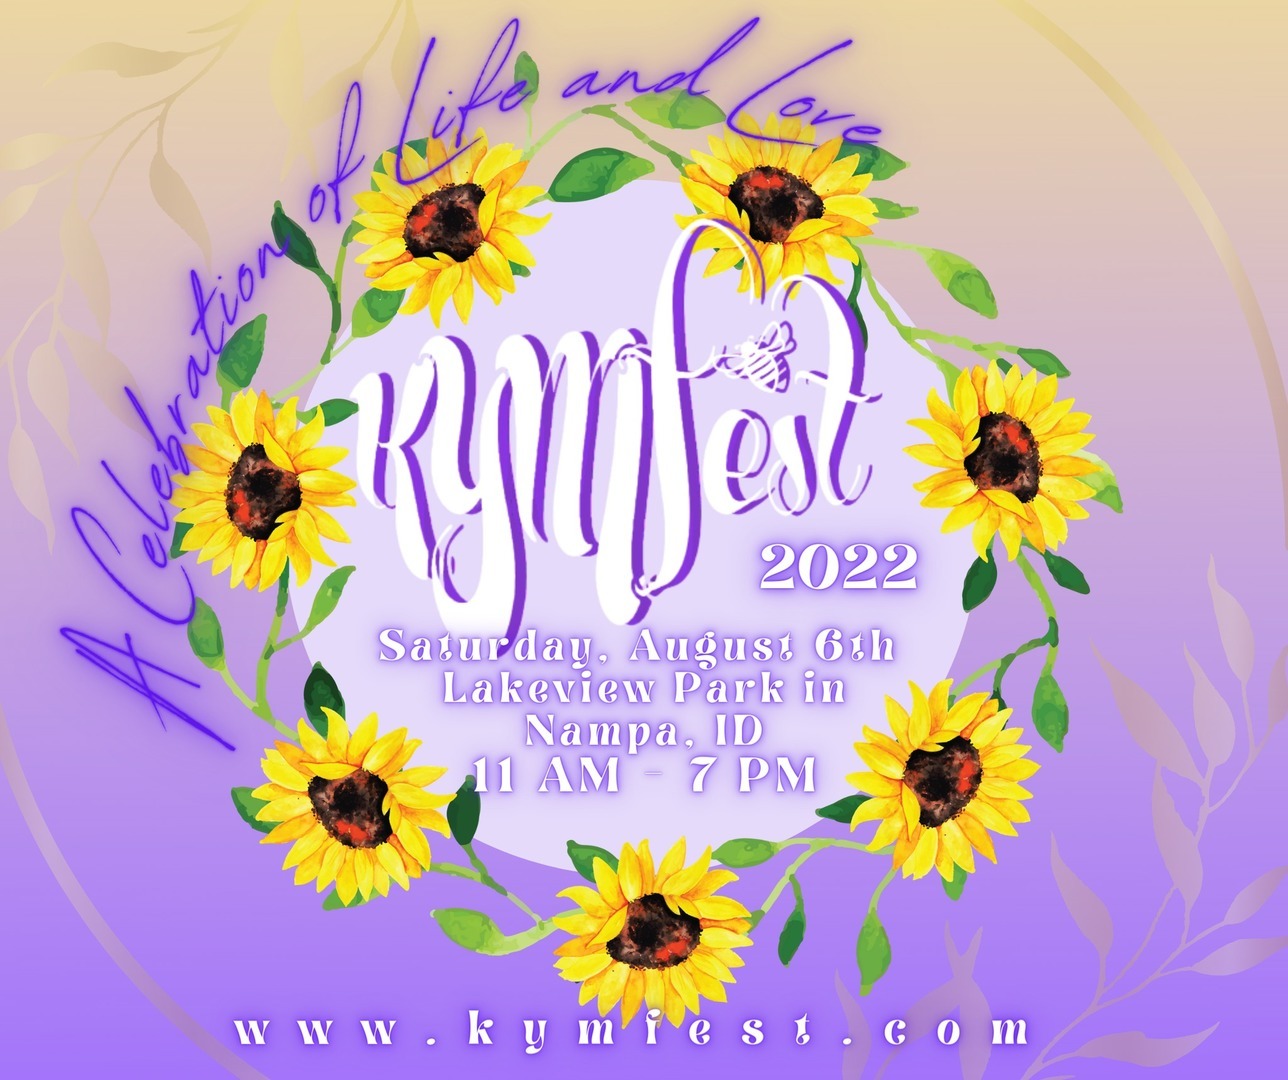 KYMfest 2022, Nampa, Idaho, United States